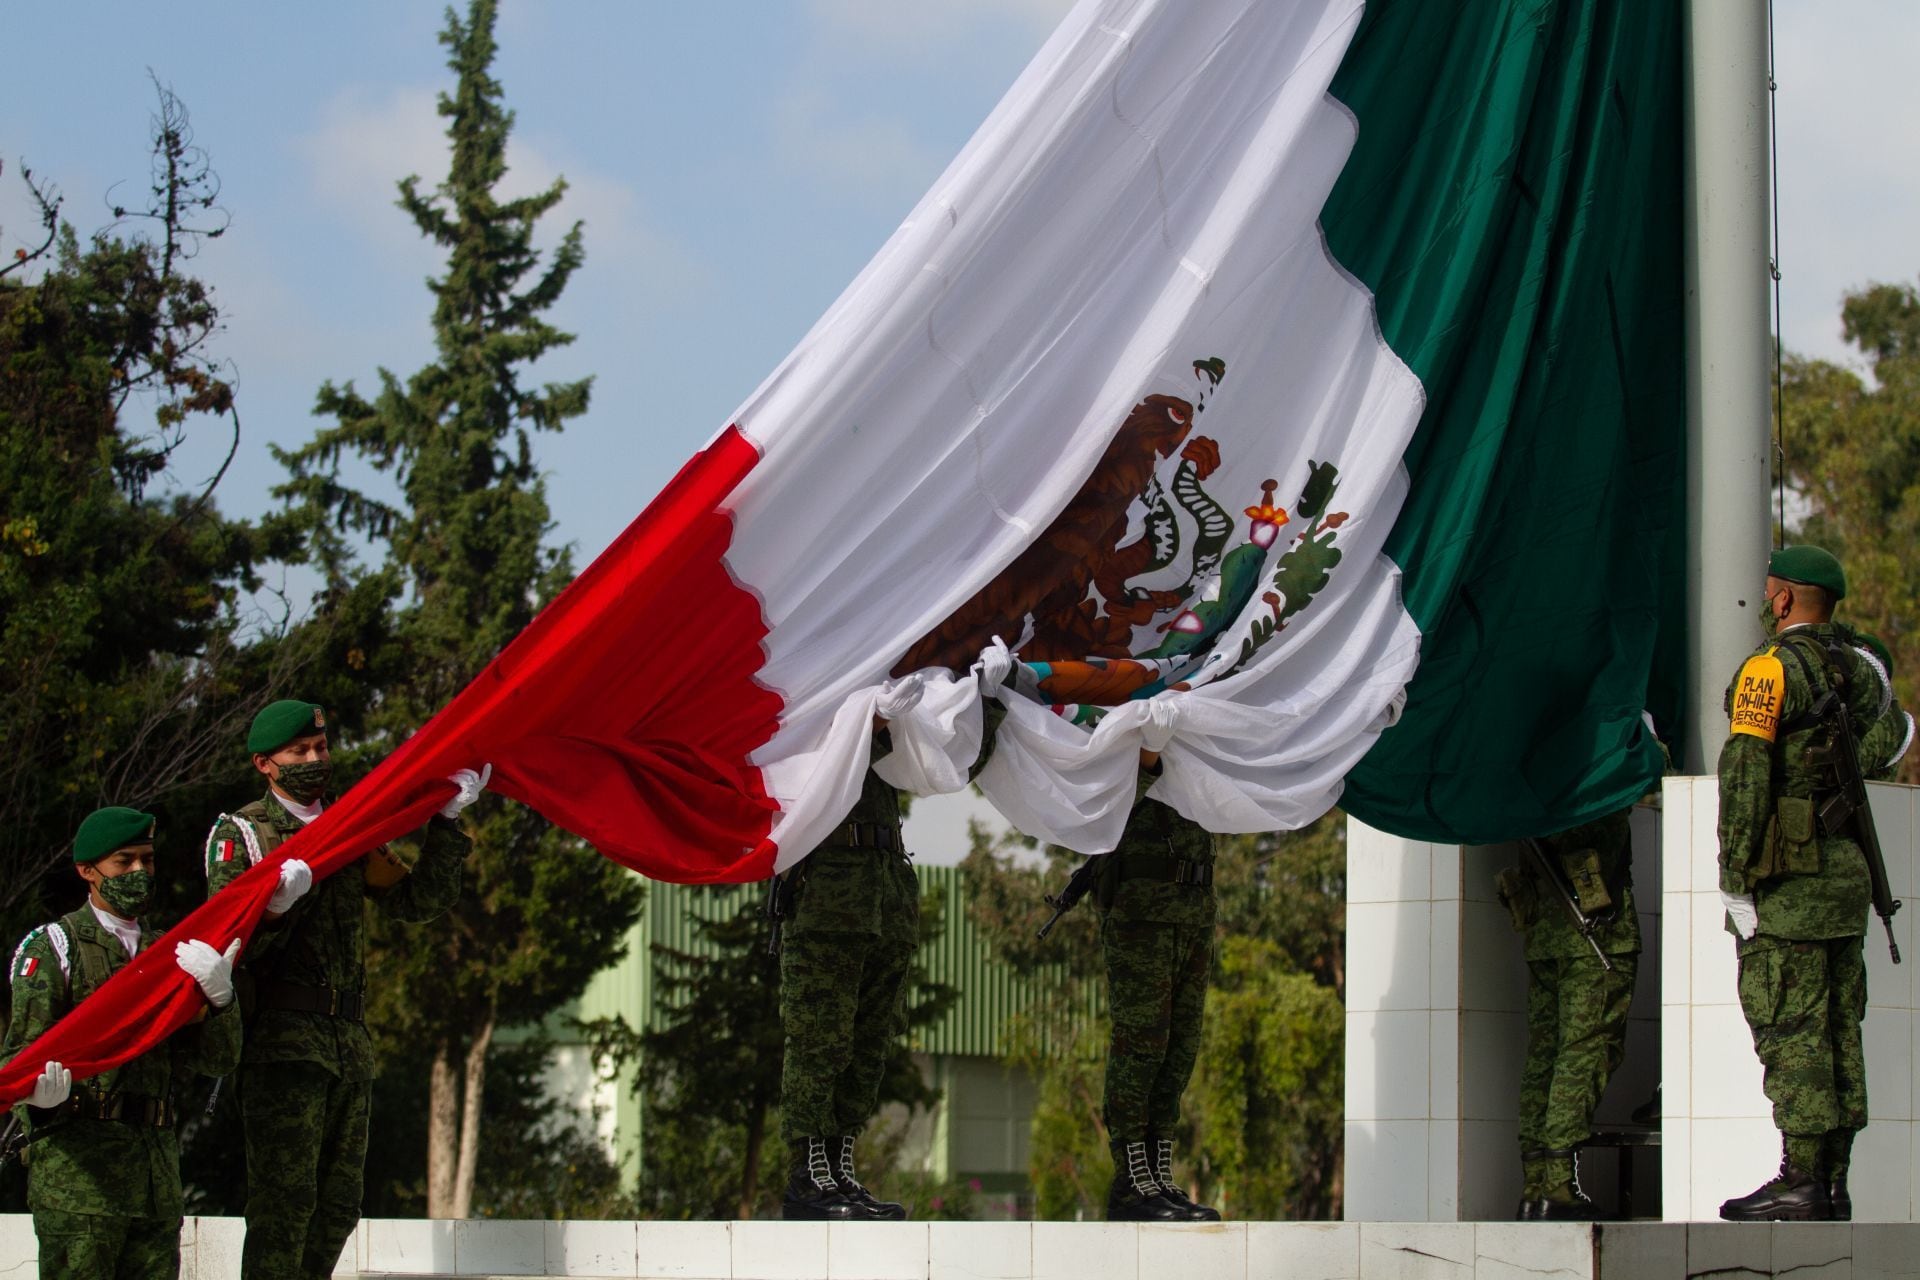 La bandera ondea en honor al Mes Patrio y la Independencia de México, celebrando el espíritu nacional en septiembre